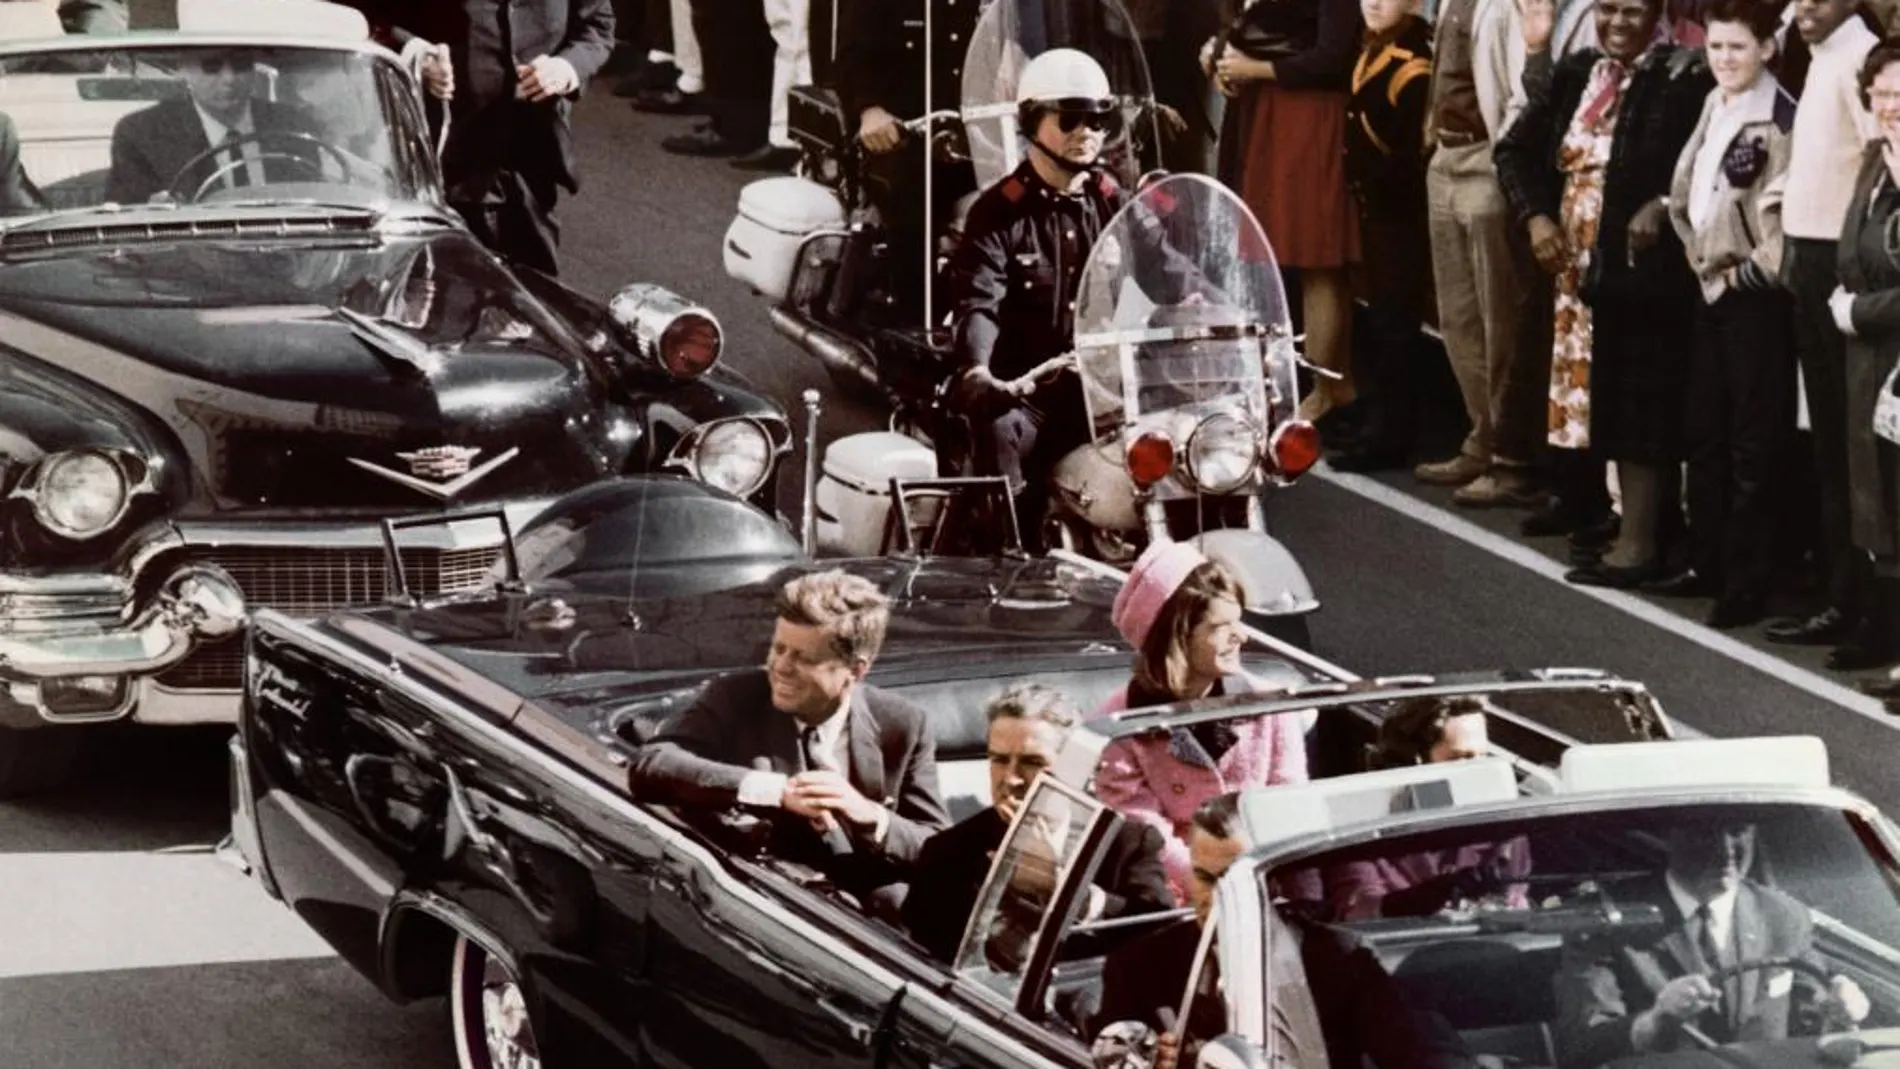 Fotografía del 22 de noviembre 1963 en donde aparece JFK acompañado de su esposa, Jacqueline, momentos antes de su asesinato